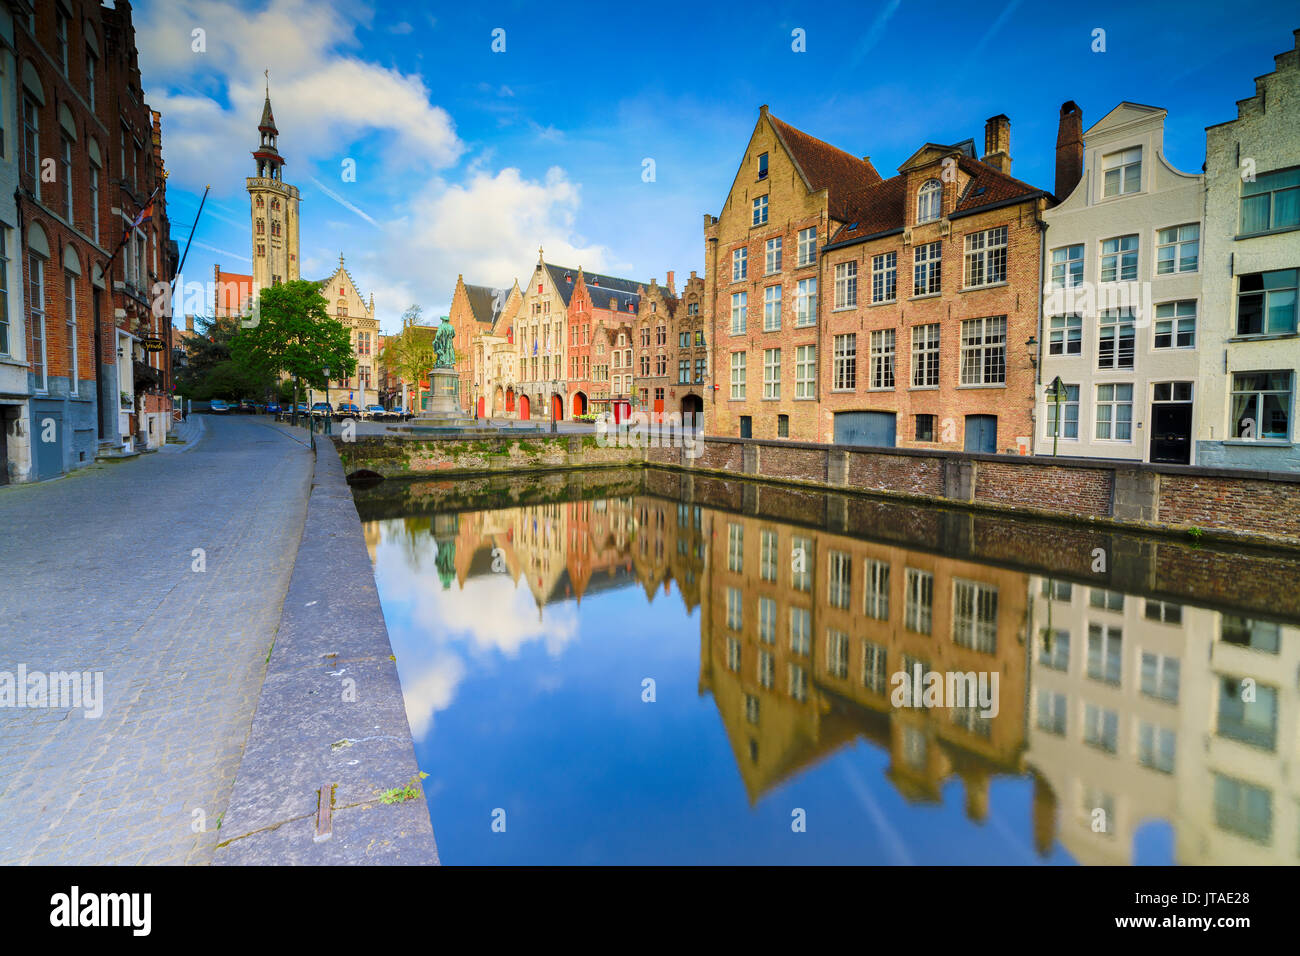 Cielo brillante al amanecer en casas y edificios históricos del centro de la ciudad se refleja en el canal, brujas, Flandes Occidental, Bélgica, Europa Foto de stock